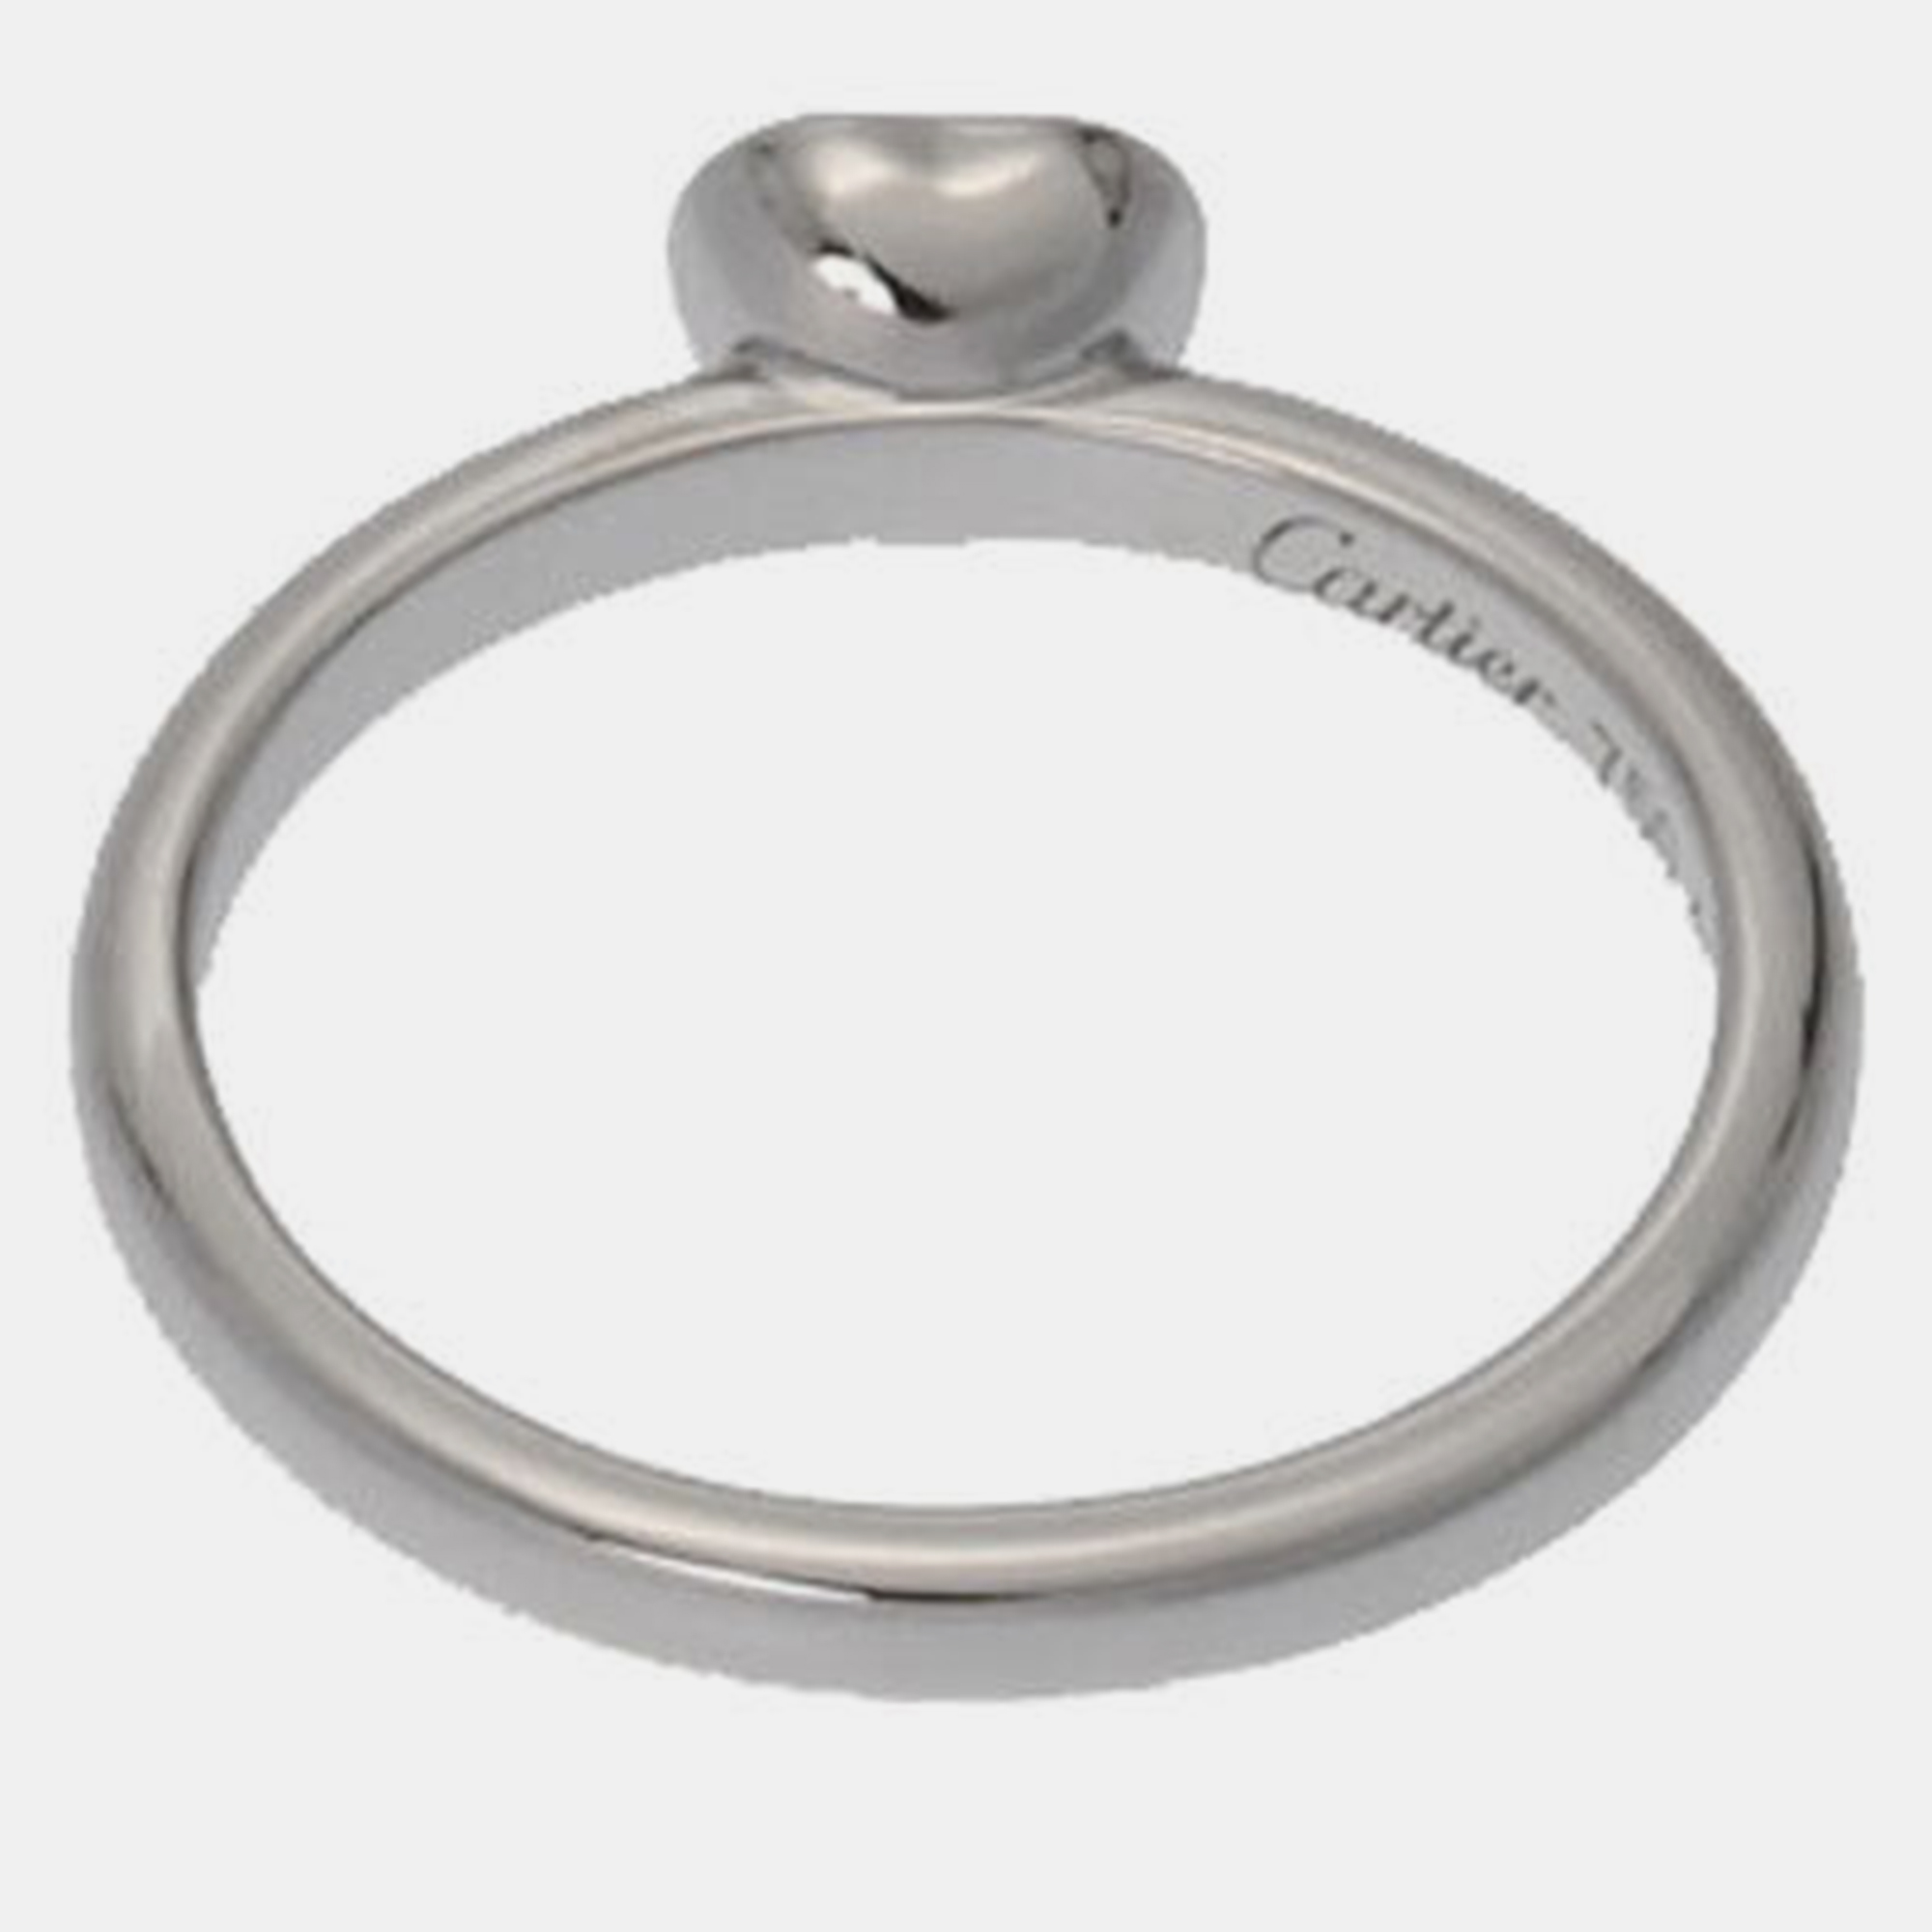 Cartier D'Amour Heart 18K White Gold Diamond Ring EU 45